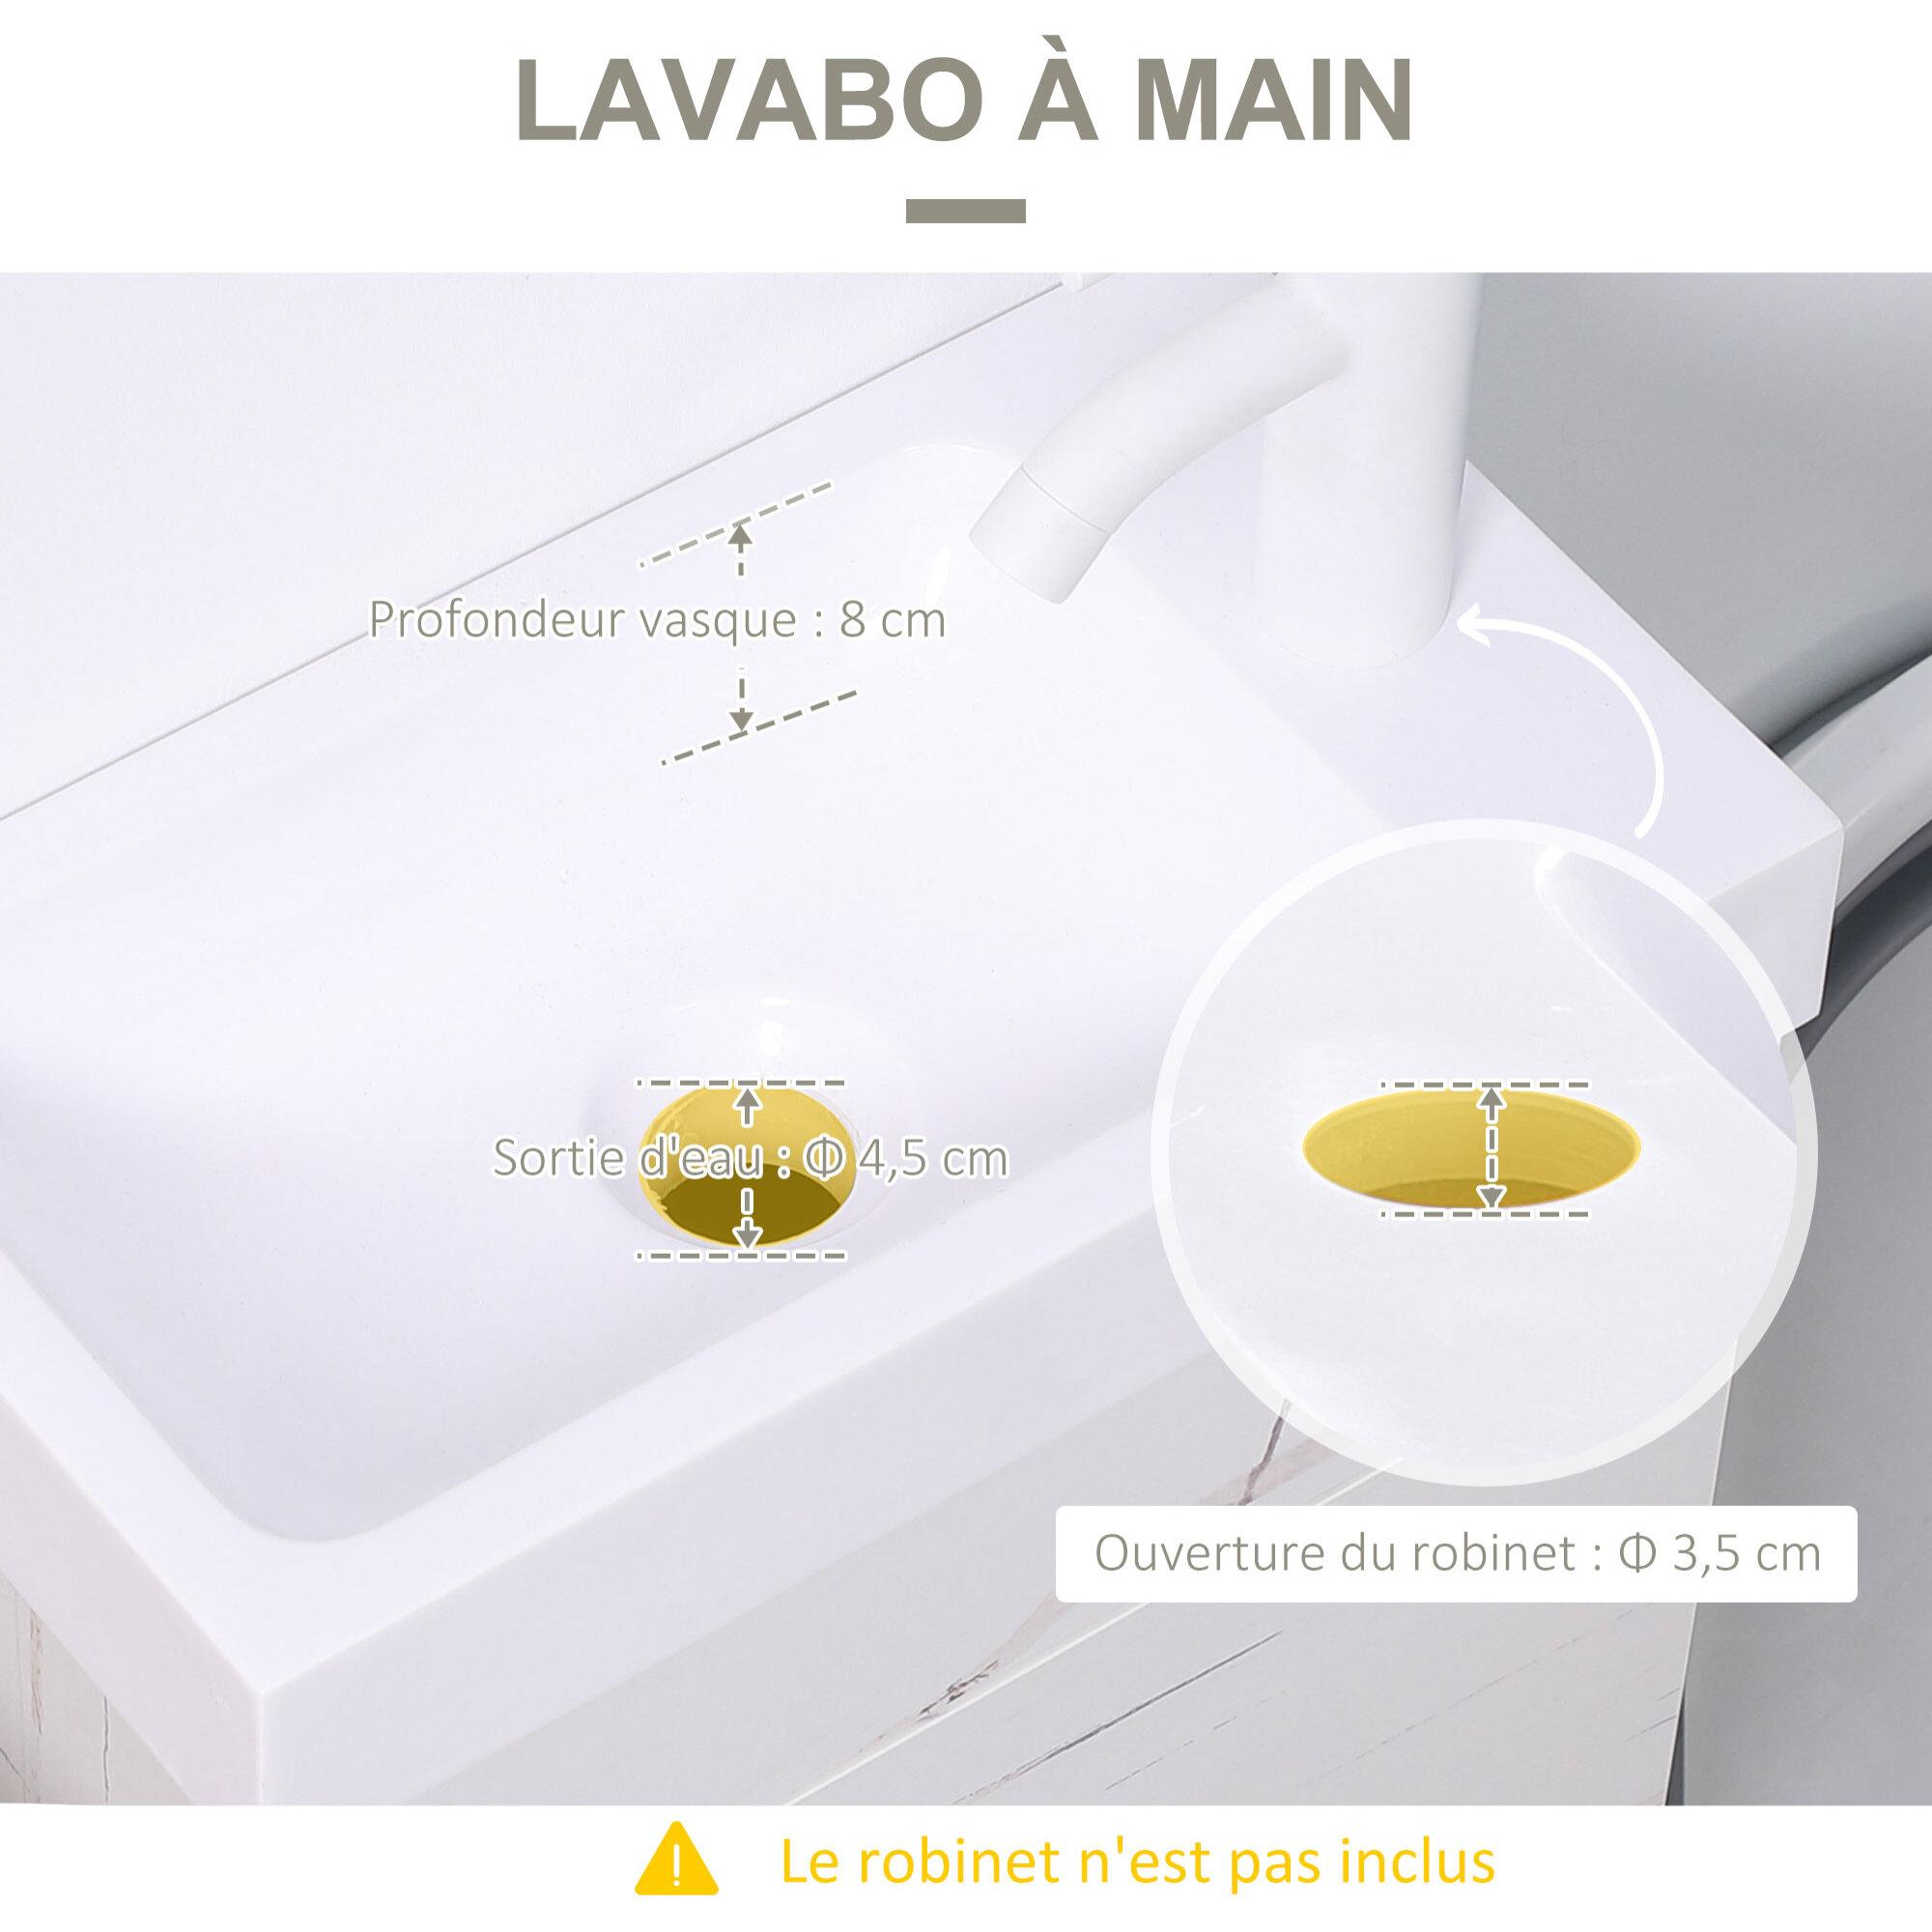 Meuble sous-vasque suspendu - vasque céramique incluse - 1 porte - dim. 40L x 22l x 50H cm - aspect marbre blanc